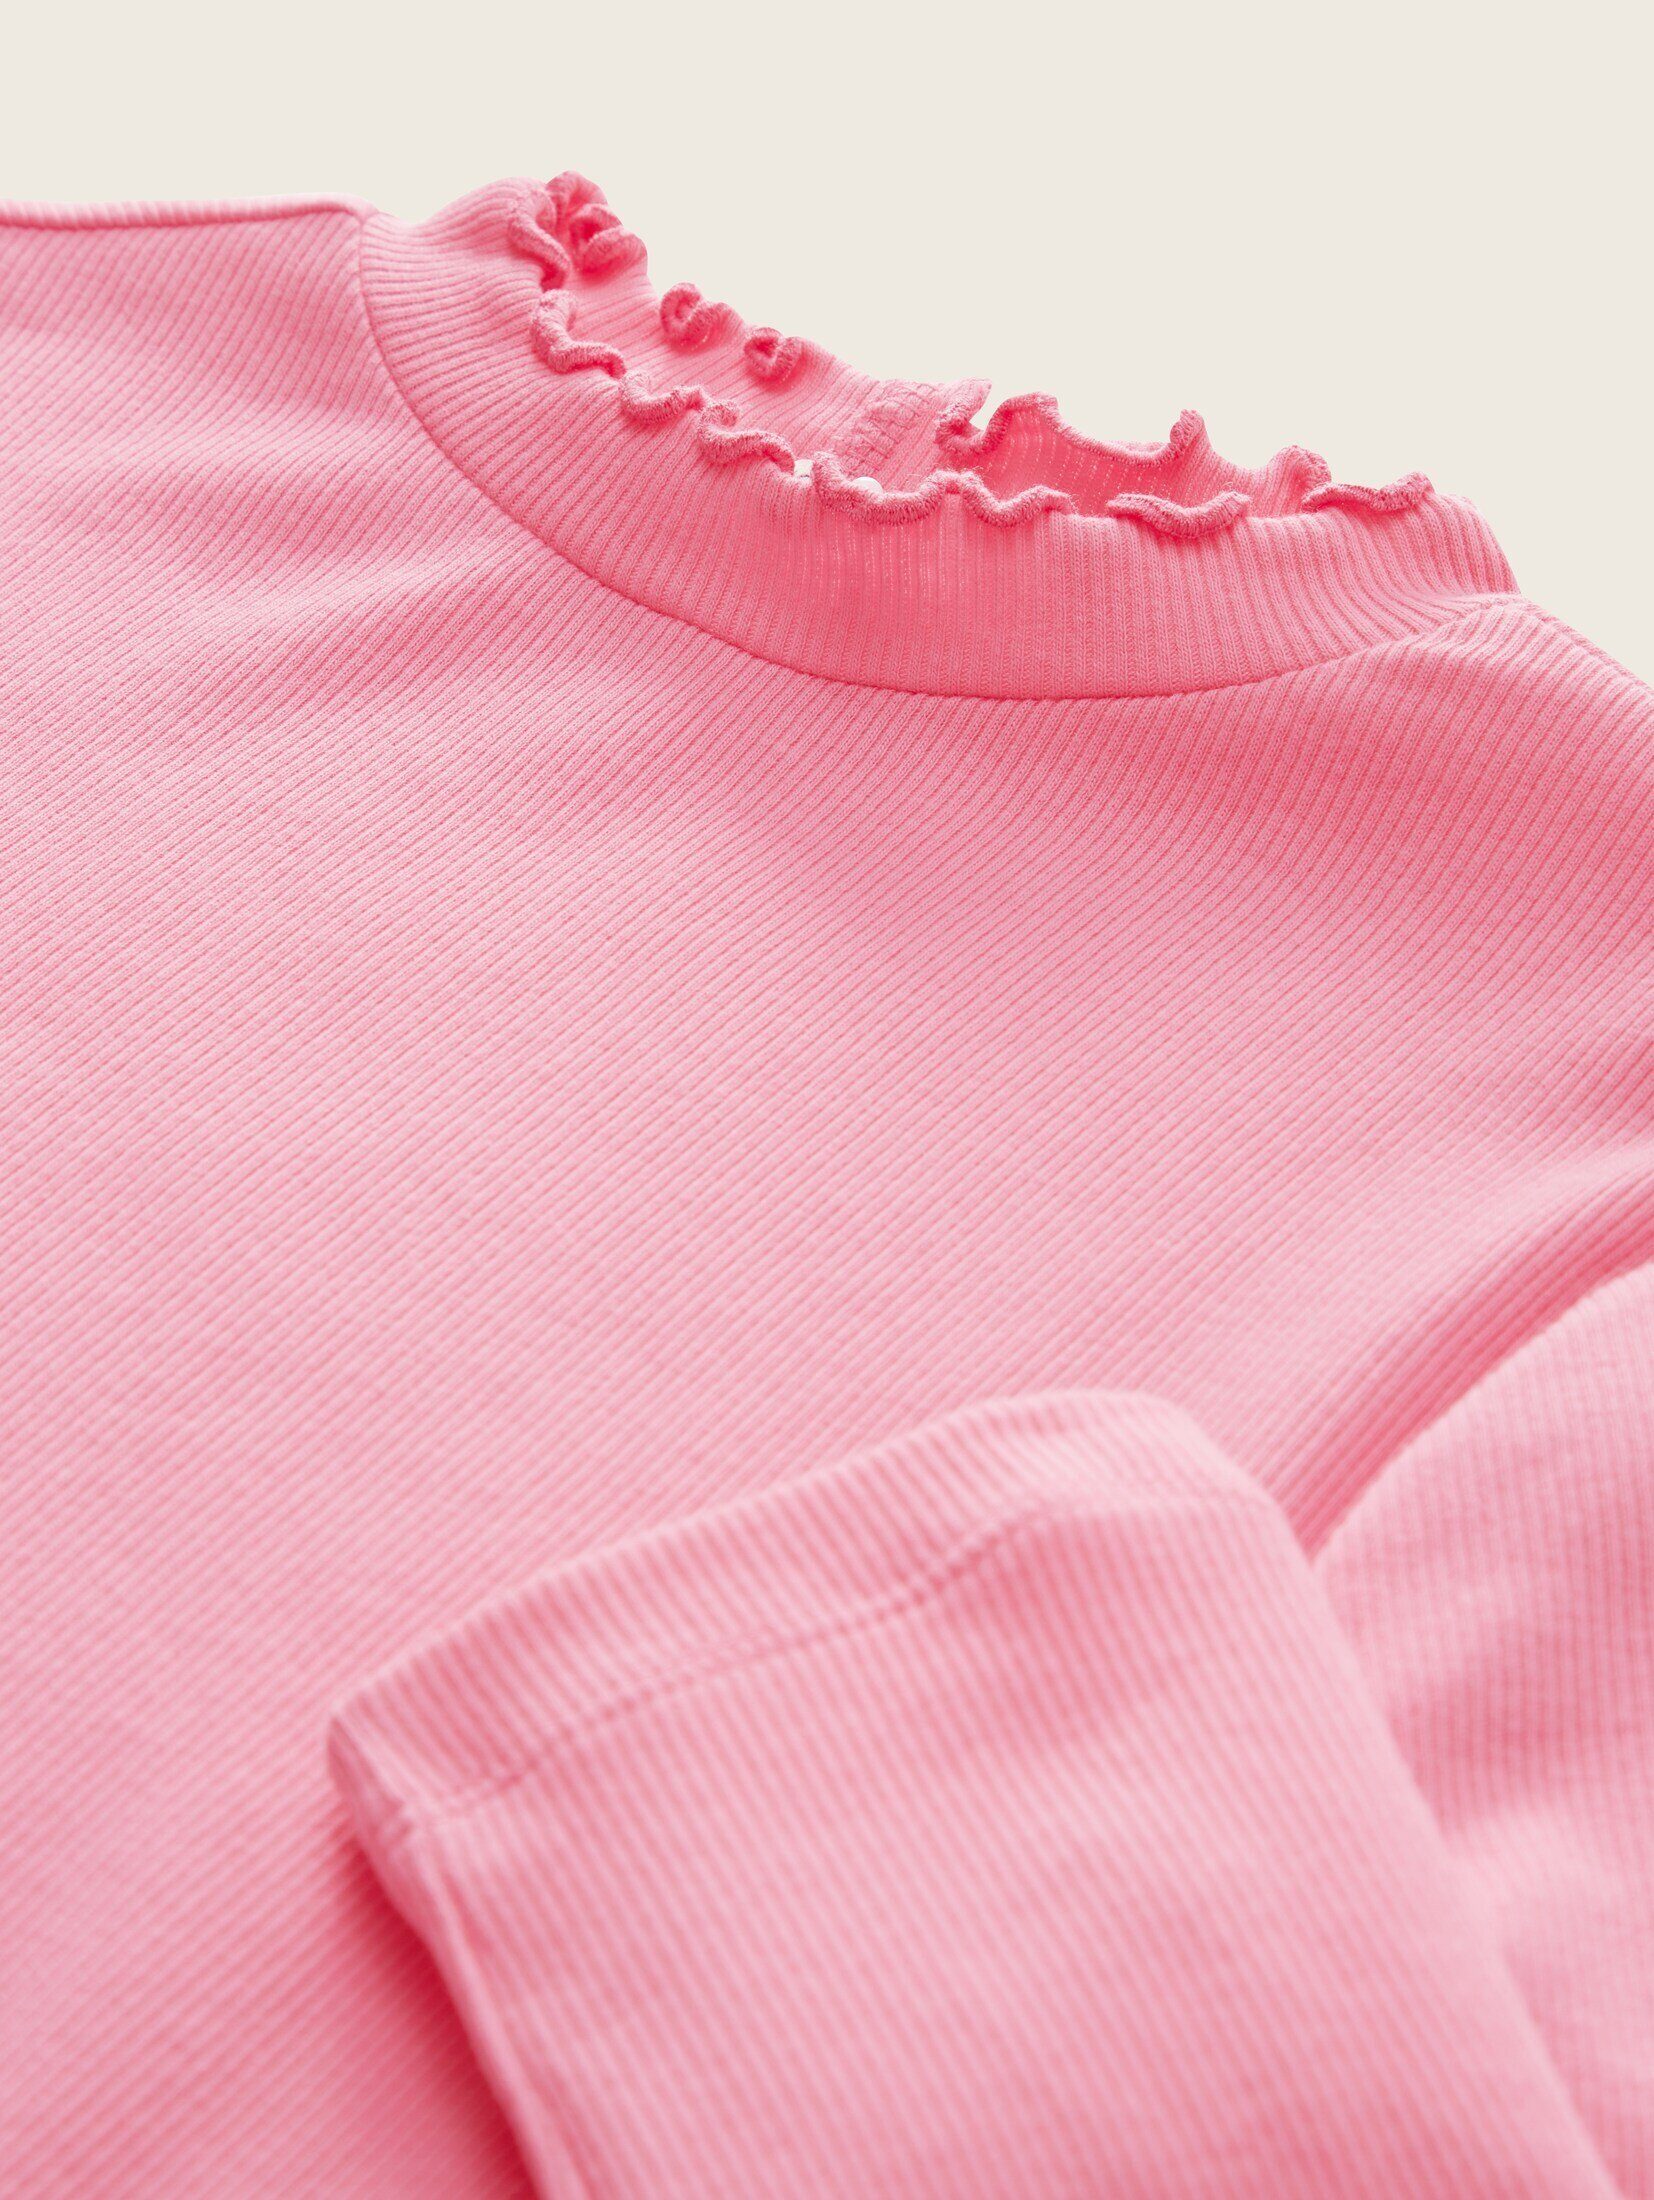 Cropped Langarmshirt T-Shirt pink TOM sunrise Bio-Baumwolle TAILOR mit